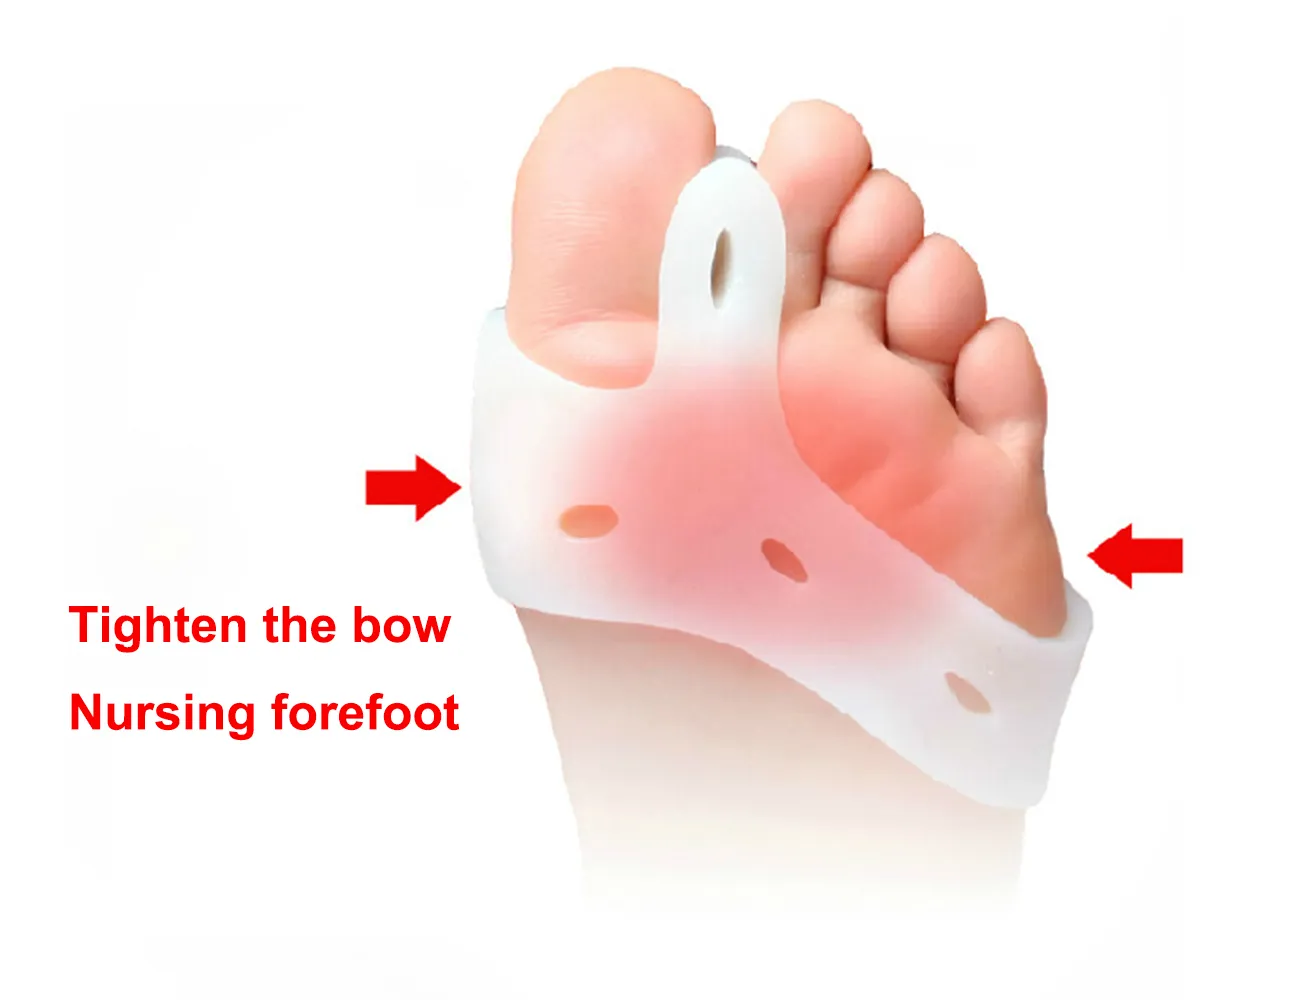 ELITZIA ETFT003 Foot Care Hallux Valgus Toe Separator Daglig användning Tåkorrigering